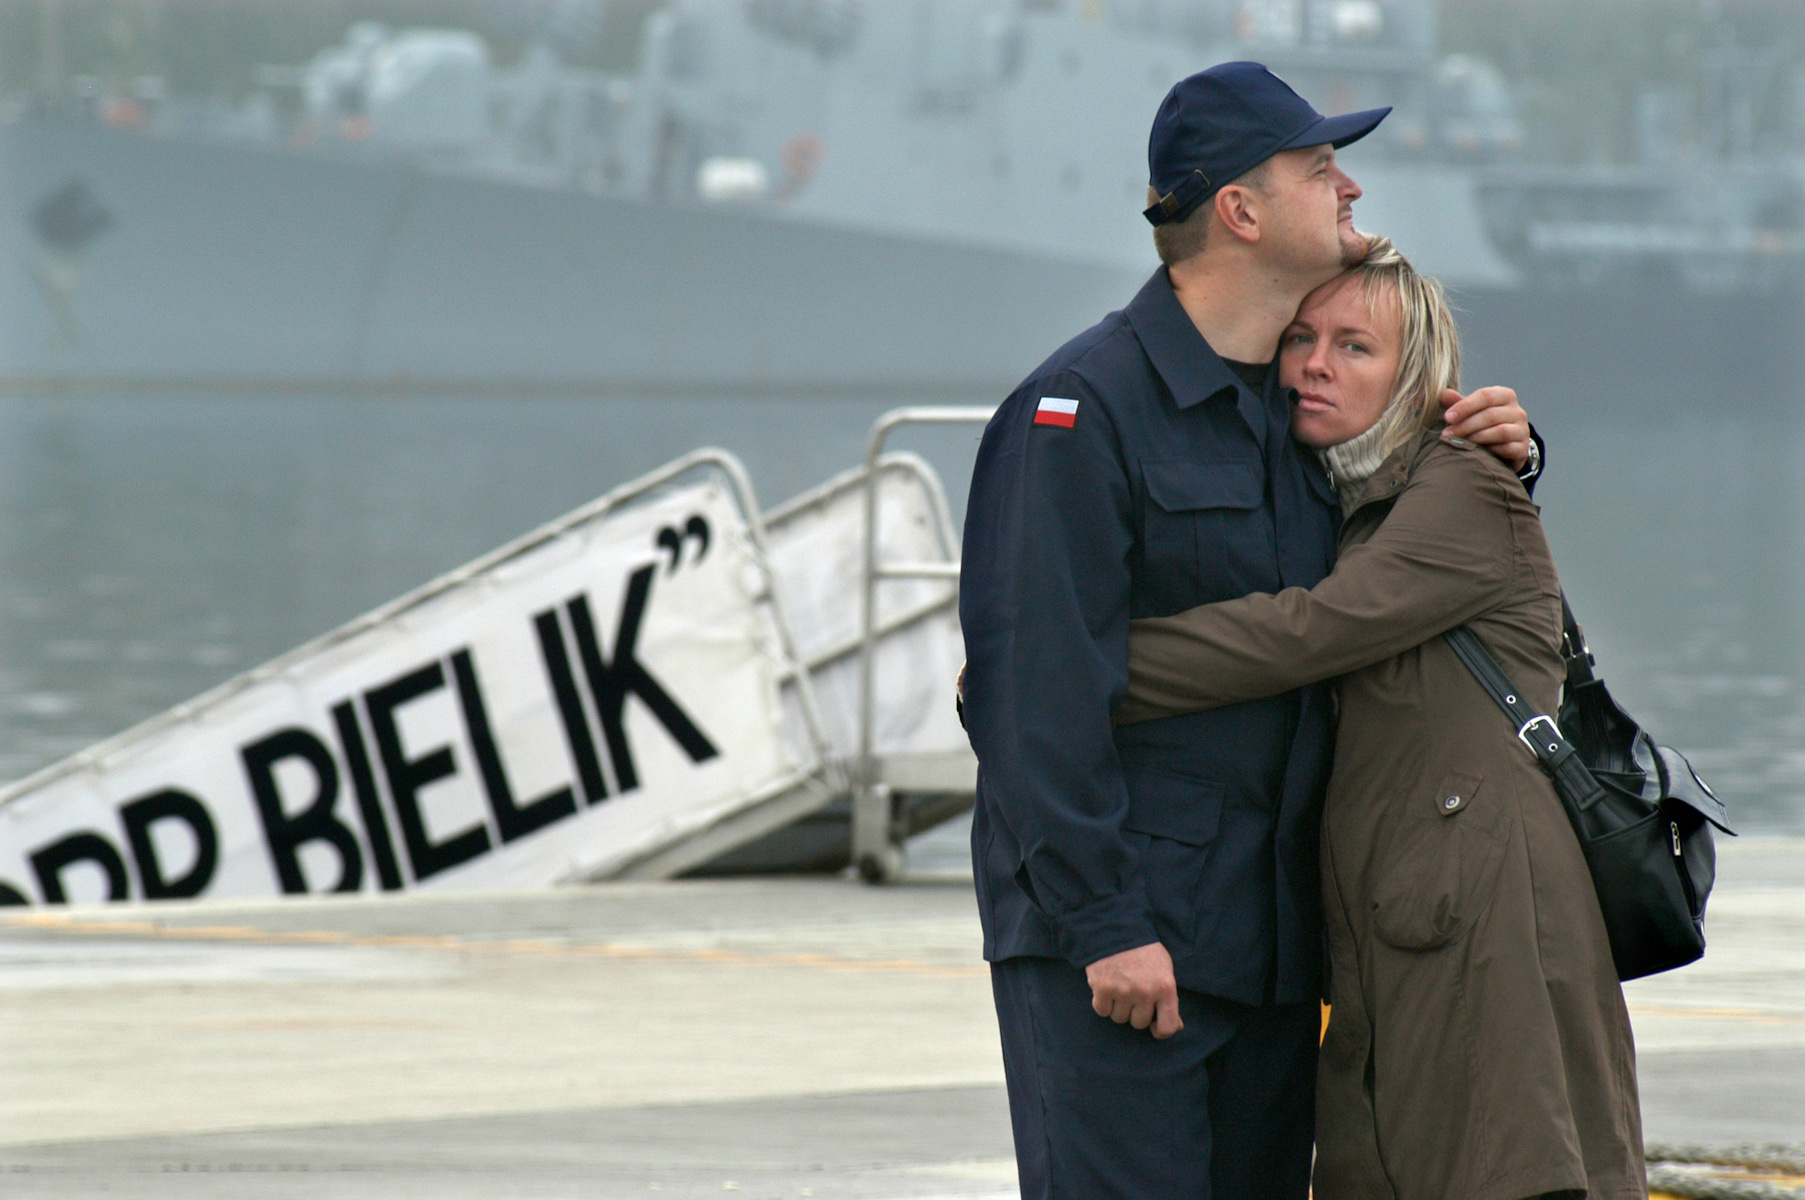 Kapitan Marynarki Adam Słowik żegna się ze swoją żoną Katarzyną przed odpłynięciem okrętu podwodnego ORP „Bielik” w porcie wojennym w Gdyni.